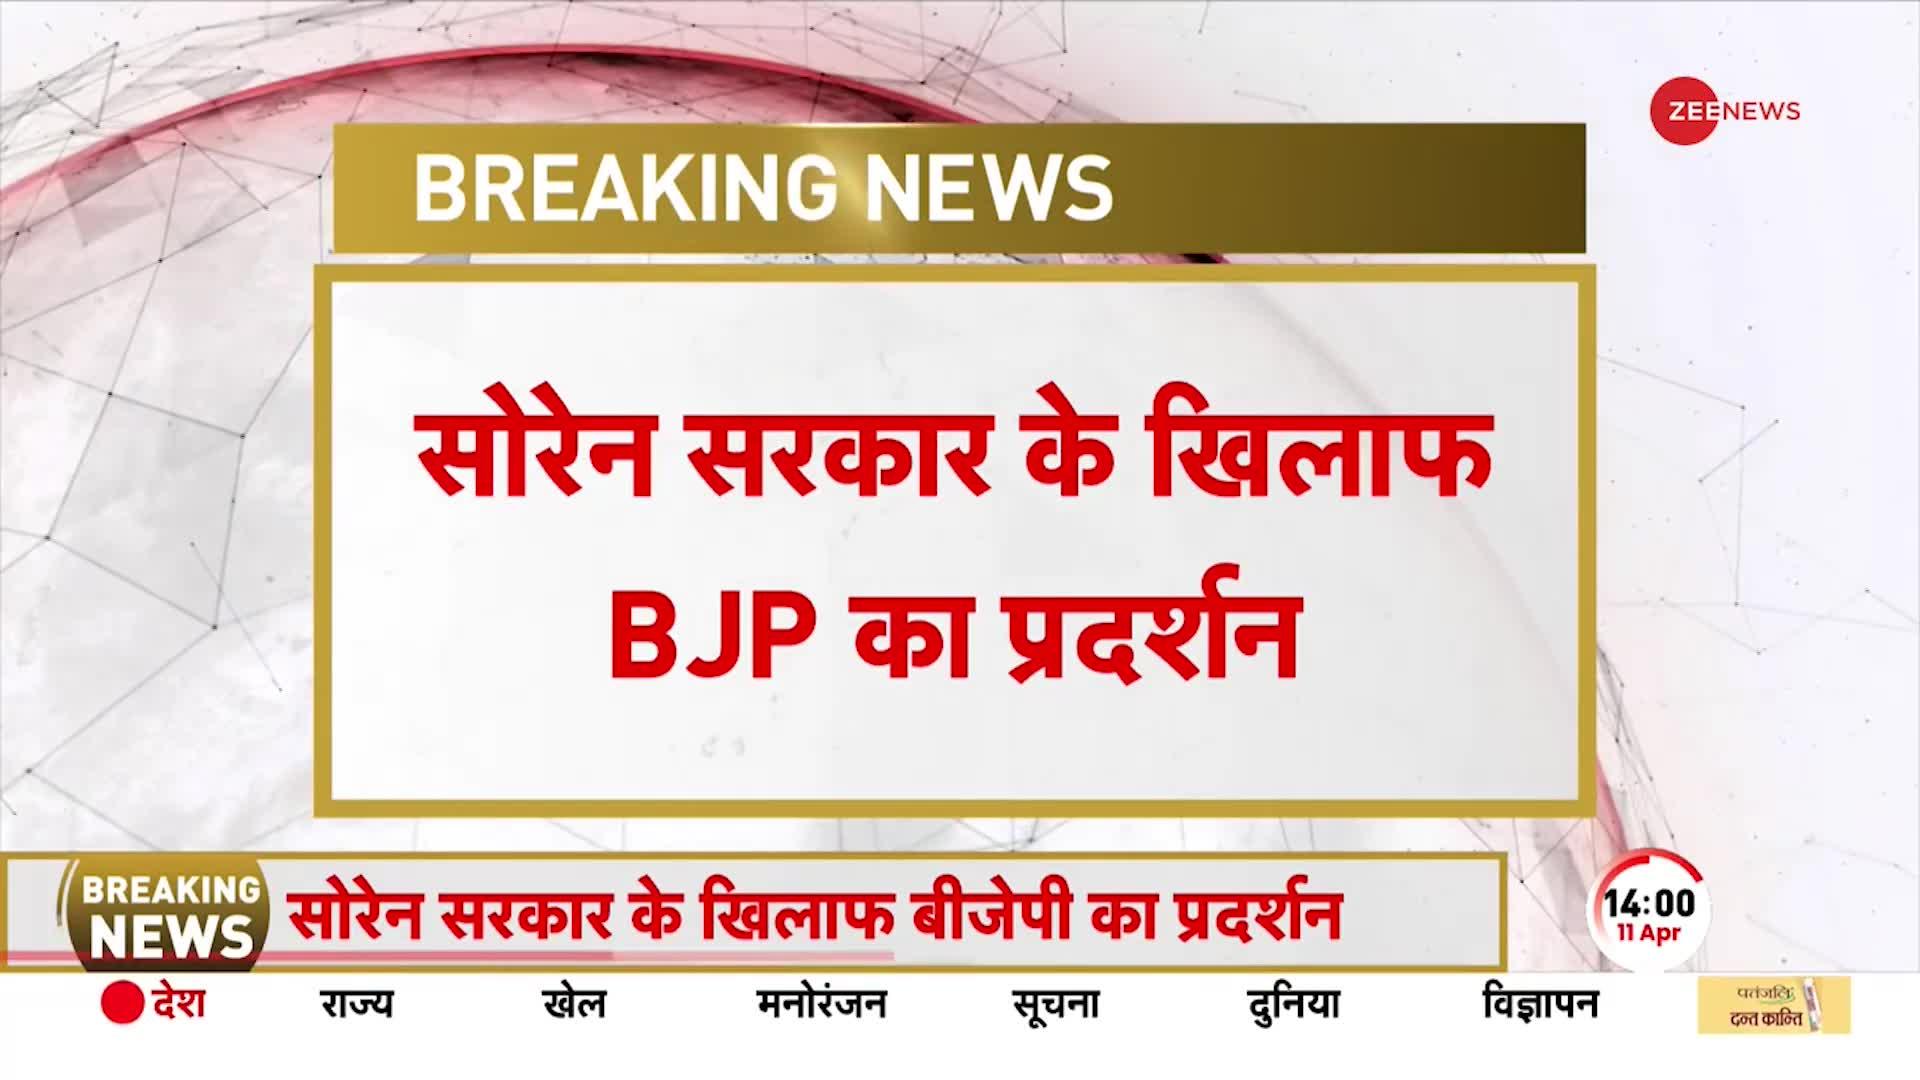 Jharkhand News: BJP का राज्य सरकार के खिलाफ प्रदर्शन, रांची में हेमंत सरकार के खिलाफ हल्लाबोल